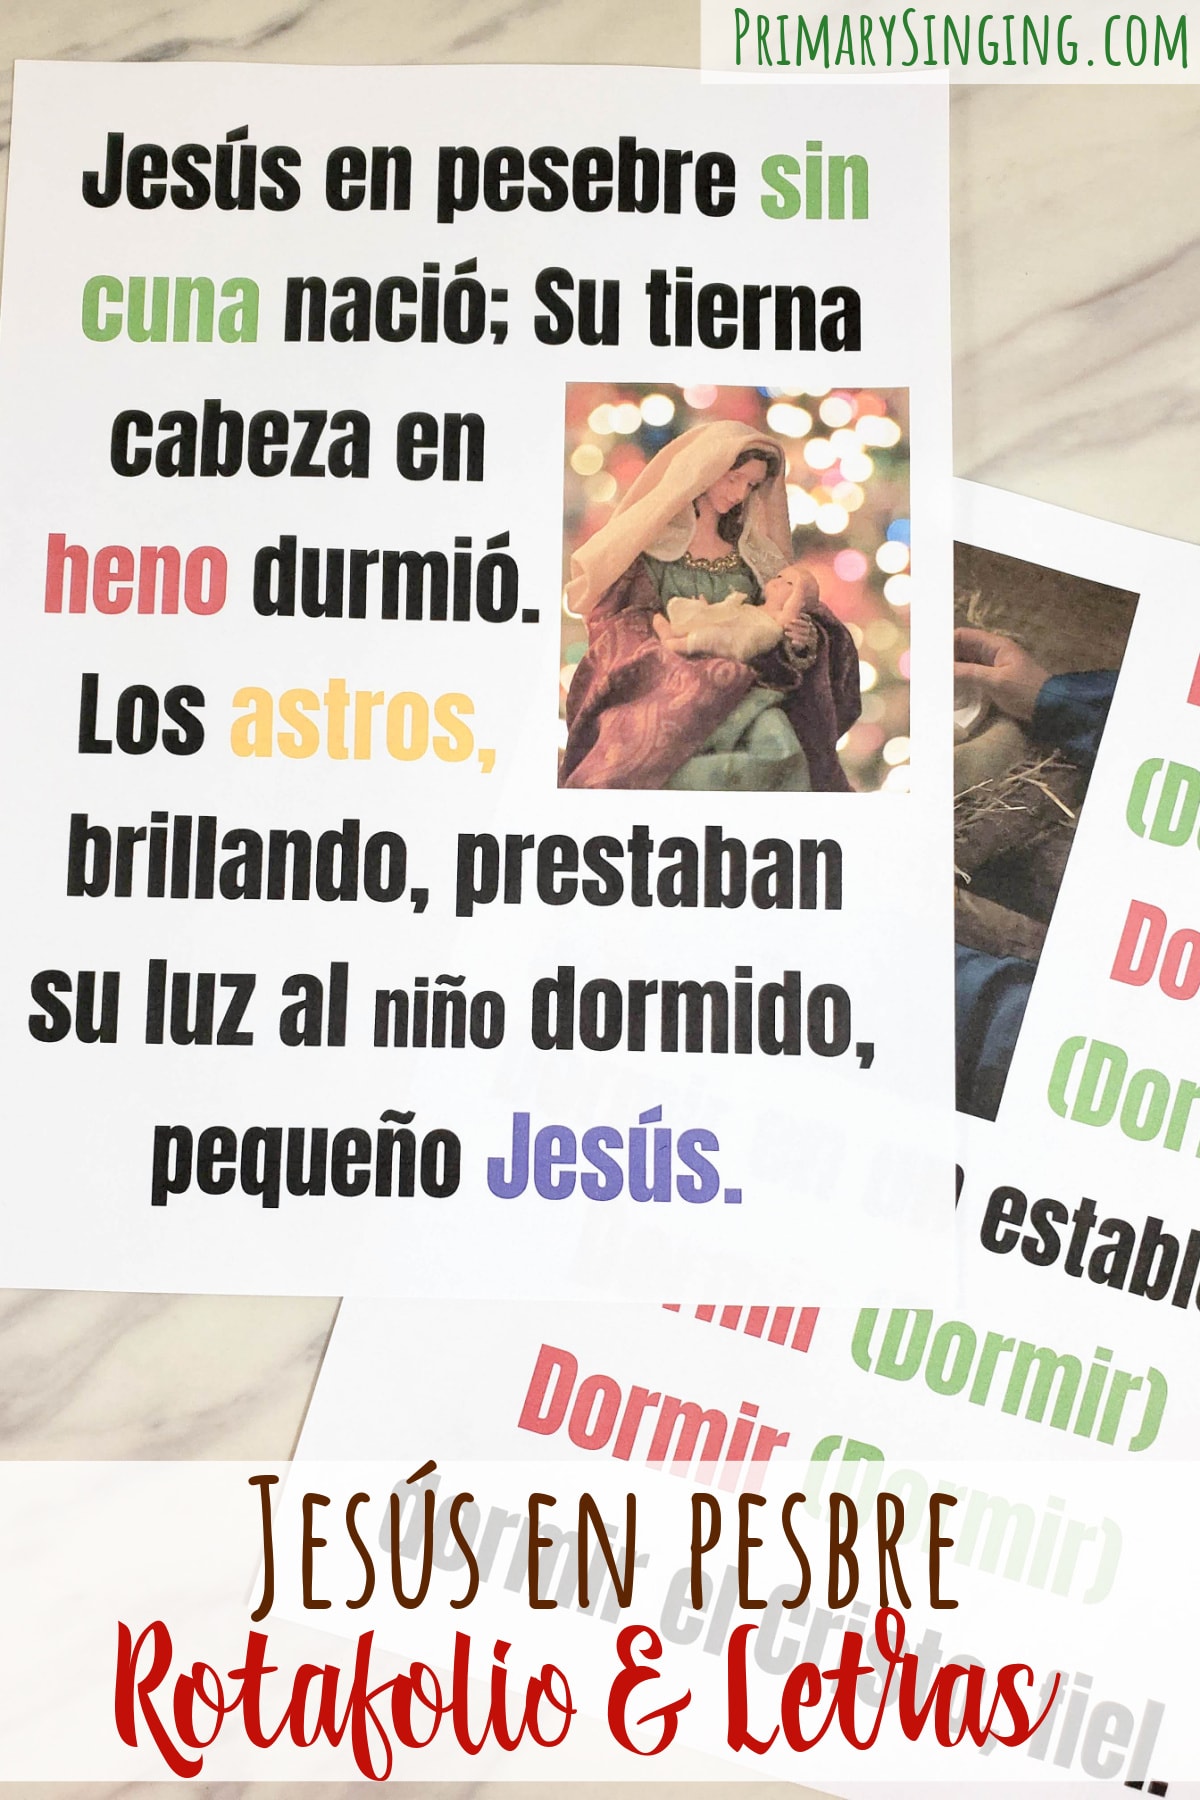 Jesus en pesebre Rotafolio Fotos y Letras Easy ideas for Music Leaders Jesus en Pesbre Rotafolio y Letras